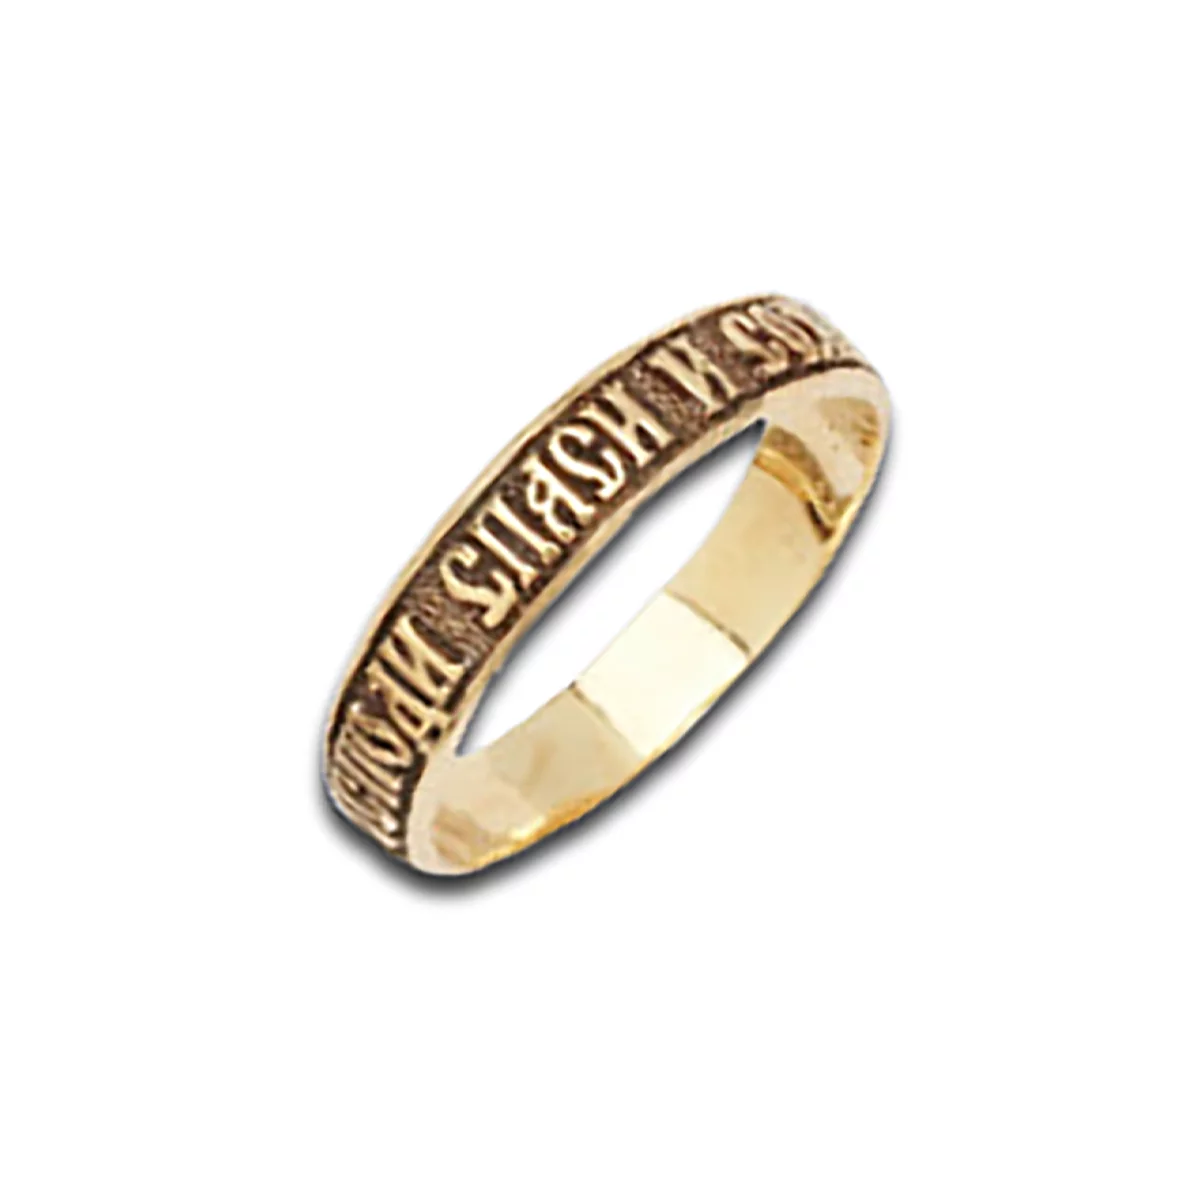 Обручальное кольцо Американка из лимонного золота Спаси и сохрани. Артикул КВ-3: цена, отзывы, фото – купить в интернет-магазине AURUM